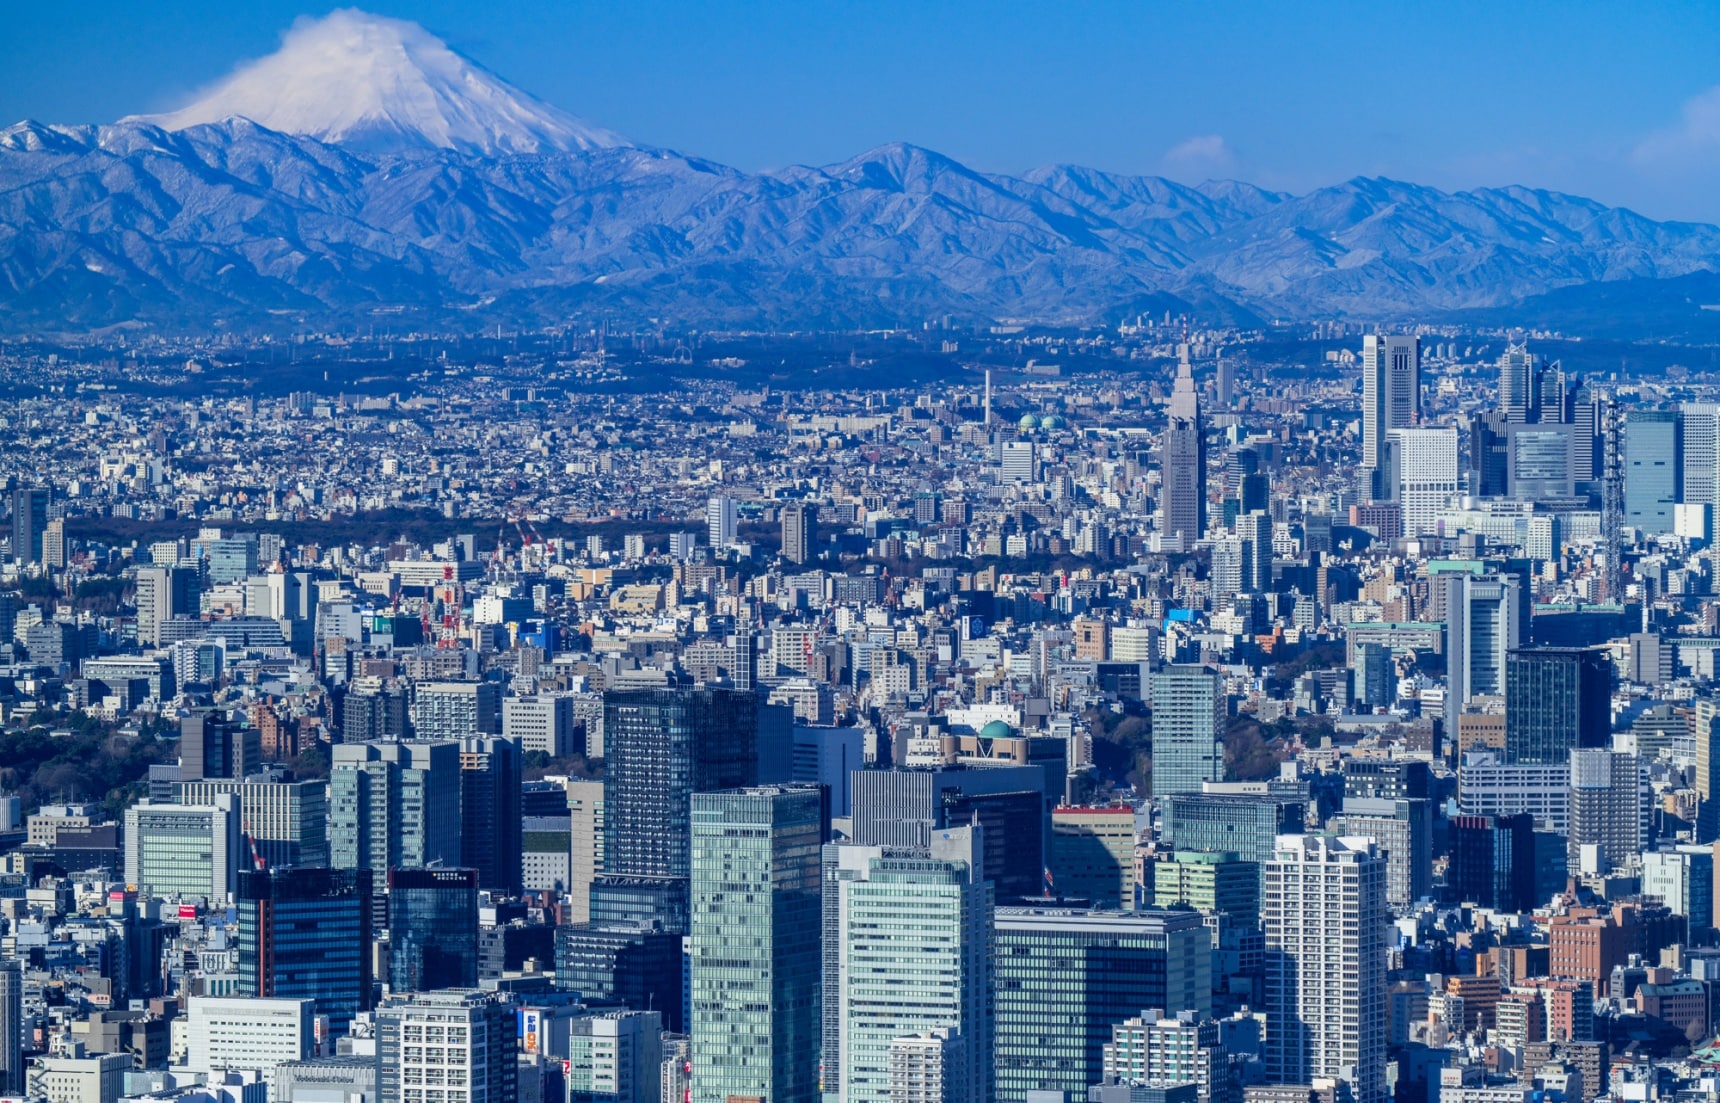 ข้อมูลการเที่ยวโตเกียวฉบับสมบูรณ์ | All About Japan